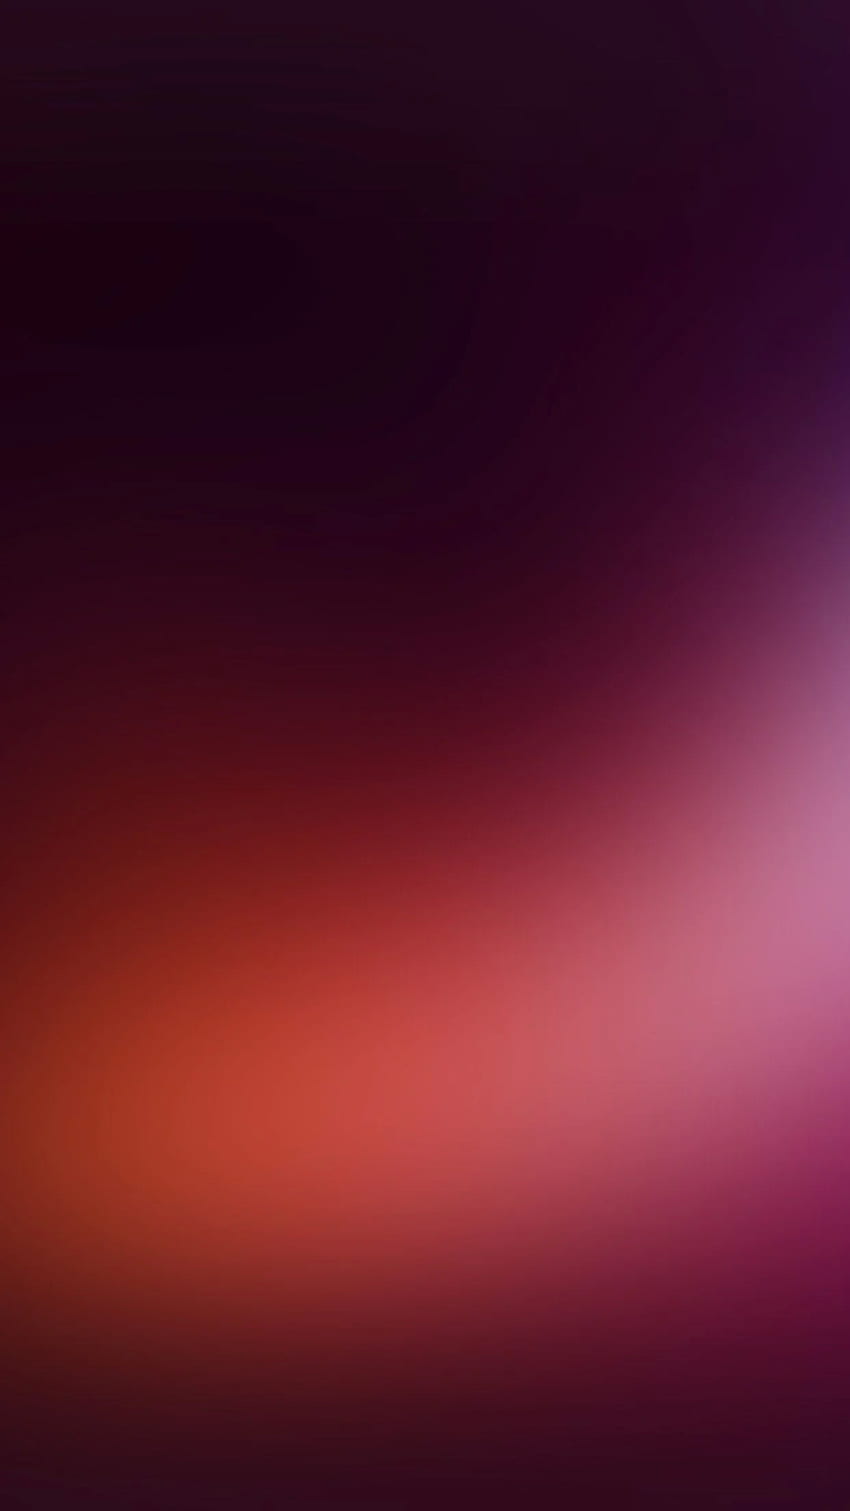 Blurred iPhone - iPhone, Blurry HD phone wallpaper